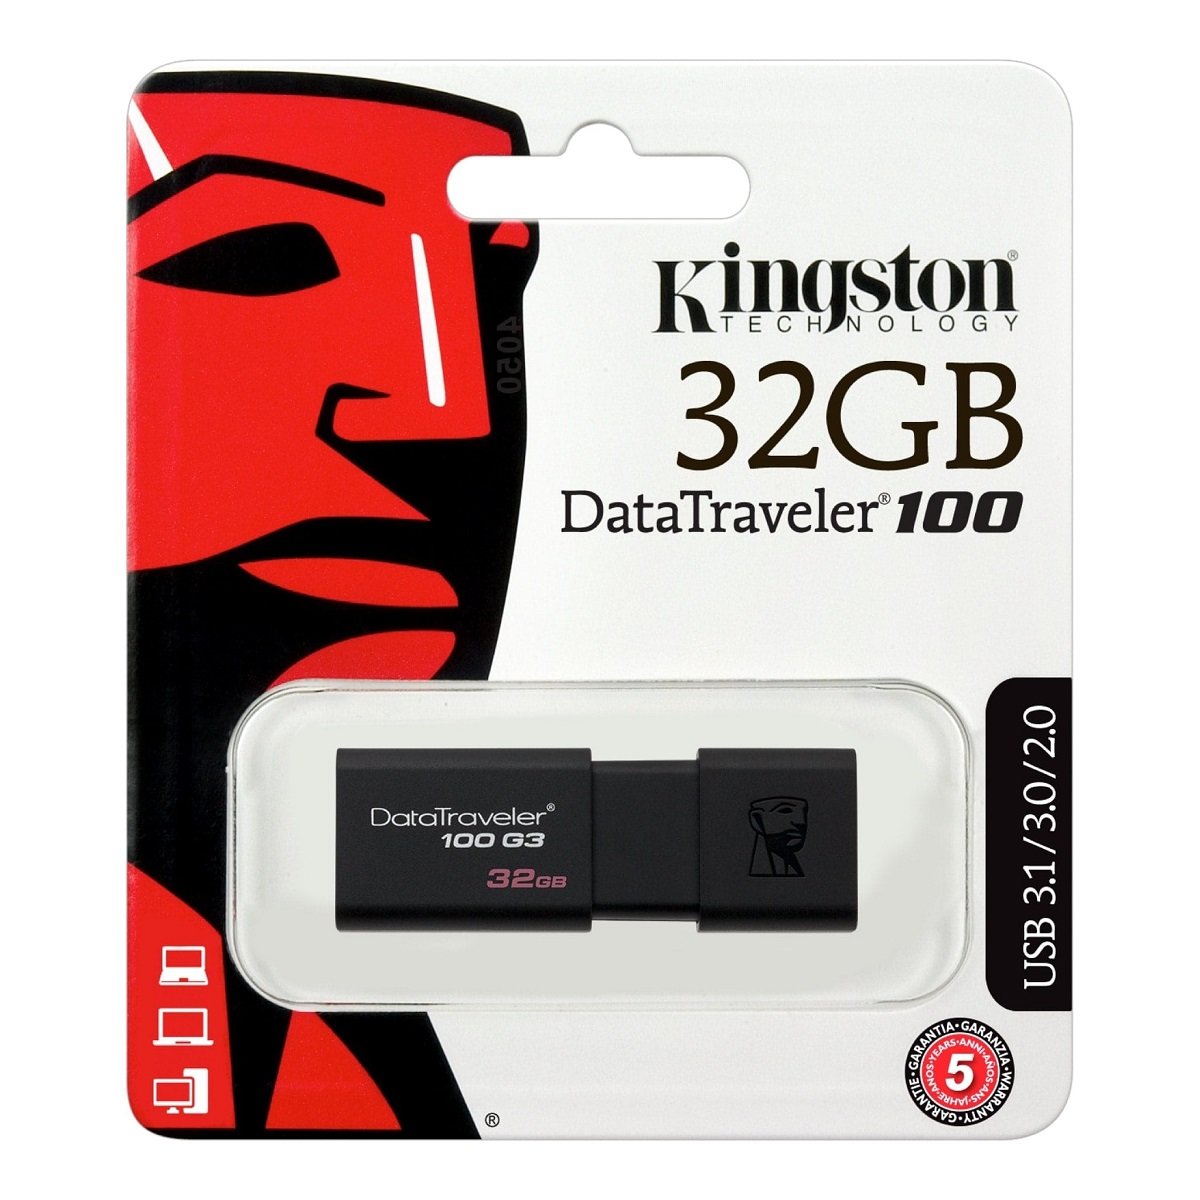 Pendrive Kingston Data Traveler 100G3 32GB DT100G3/32GB  widok pamięci w opakowaniu od przodu